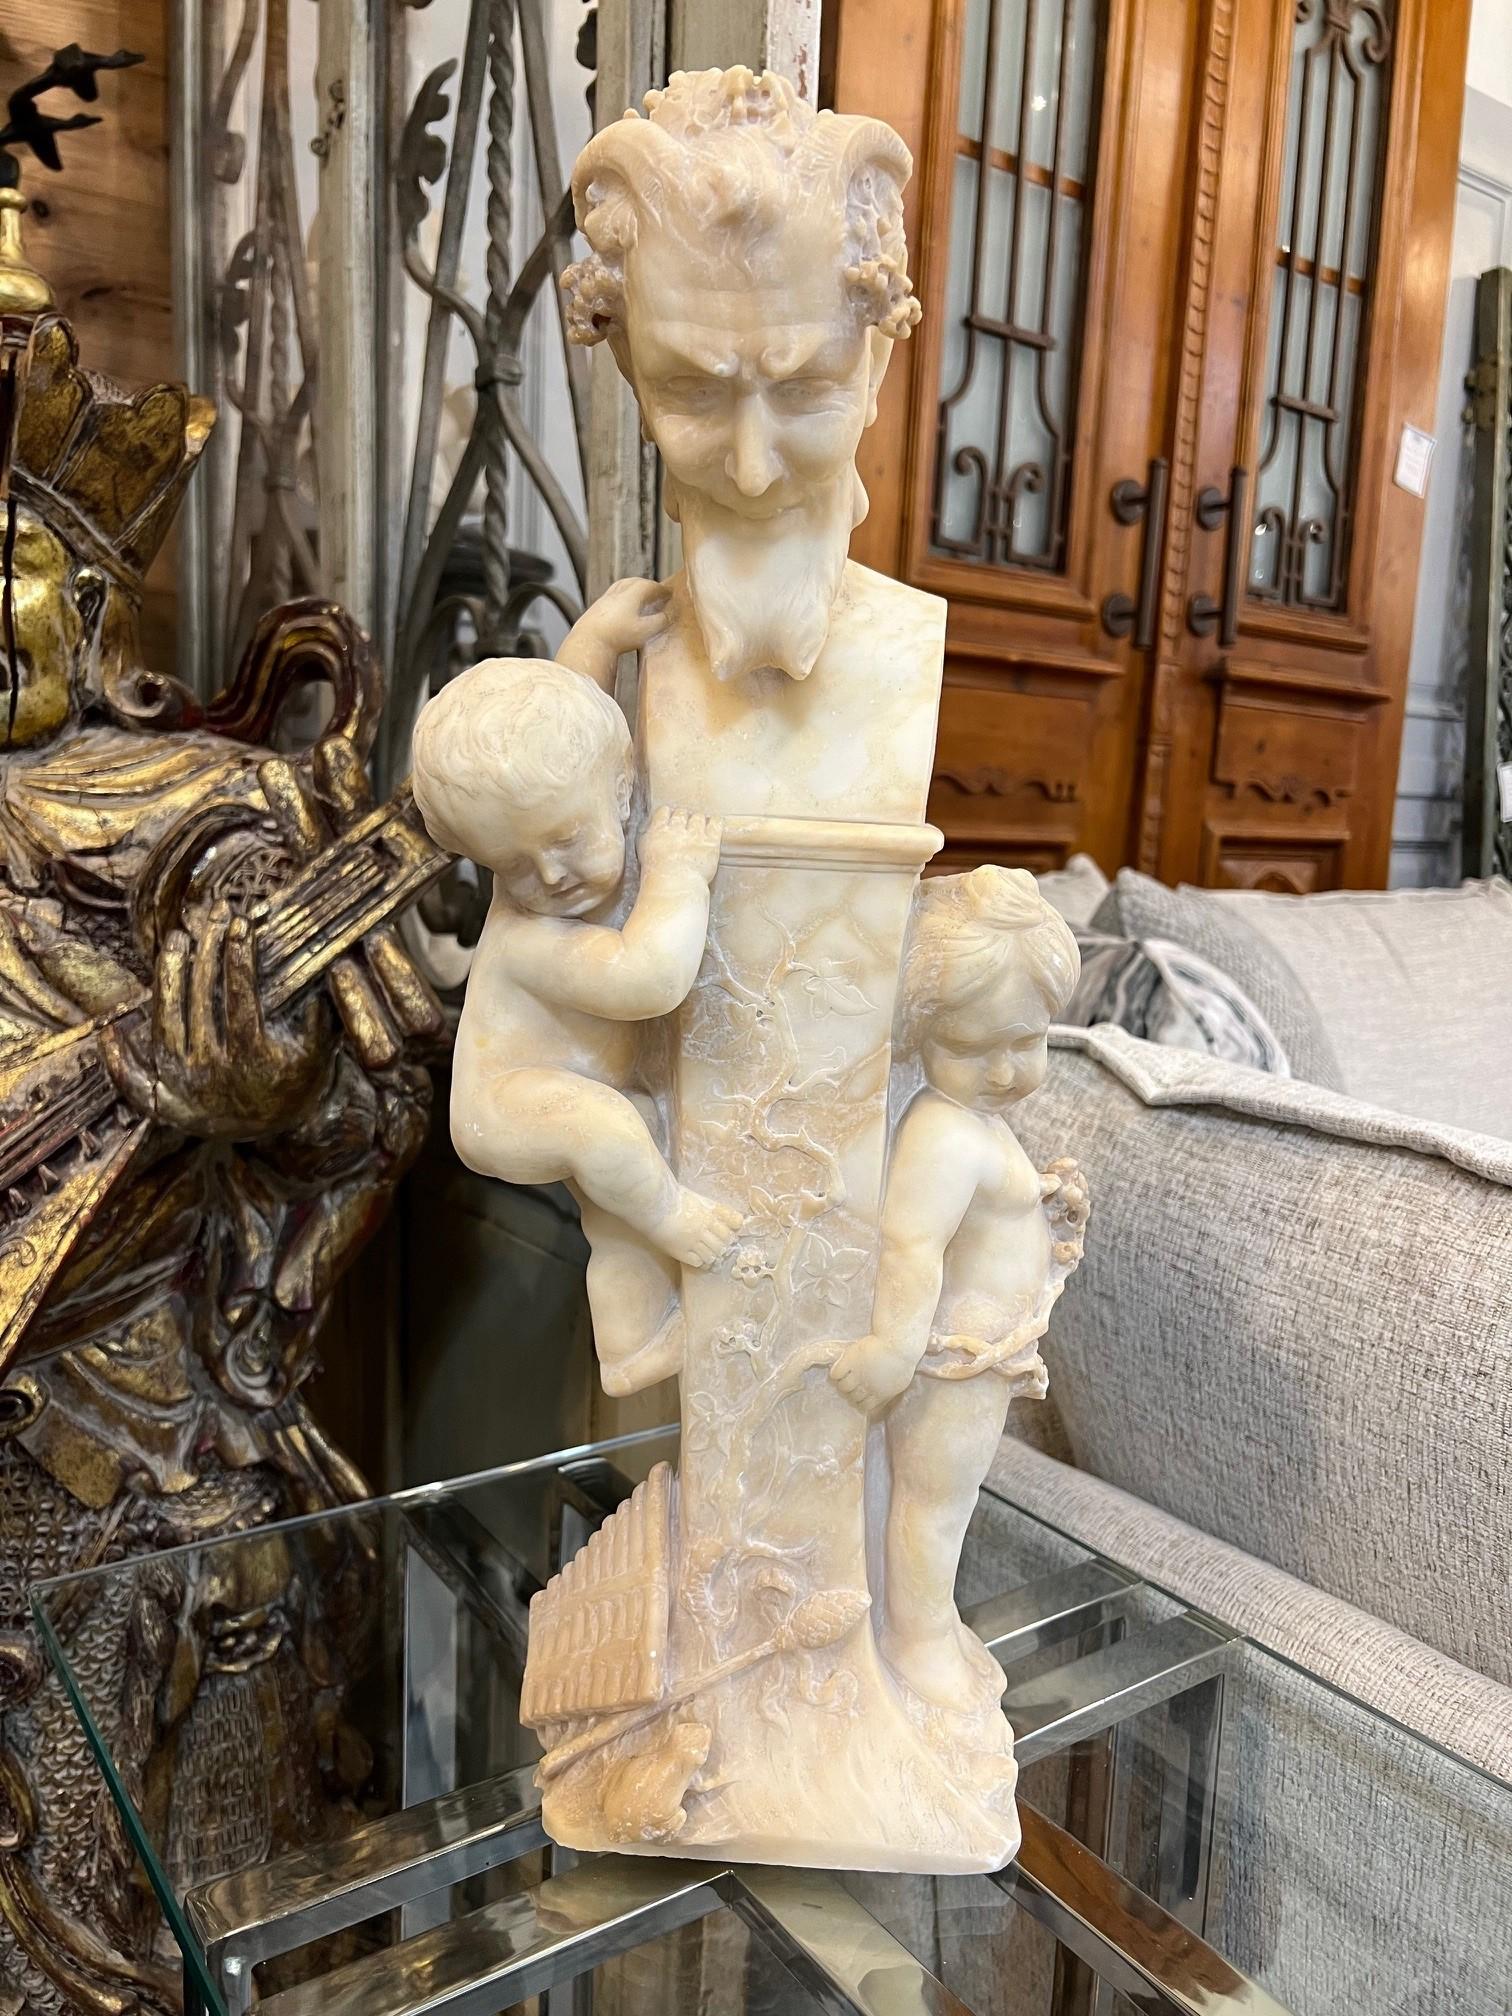 Buste italien antique en albâtre représentant Pan sur un piédestal avec deux petits enfants. Pan, qui n'est pas un dieu majeur, est tout de même un personnage important de la mythologie grecque. Il était le dieu des bergers, de la musique et de la